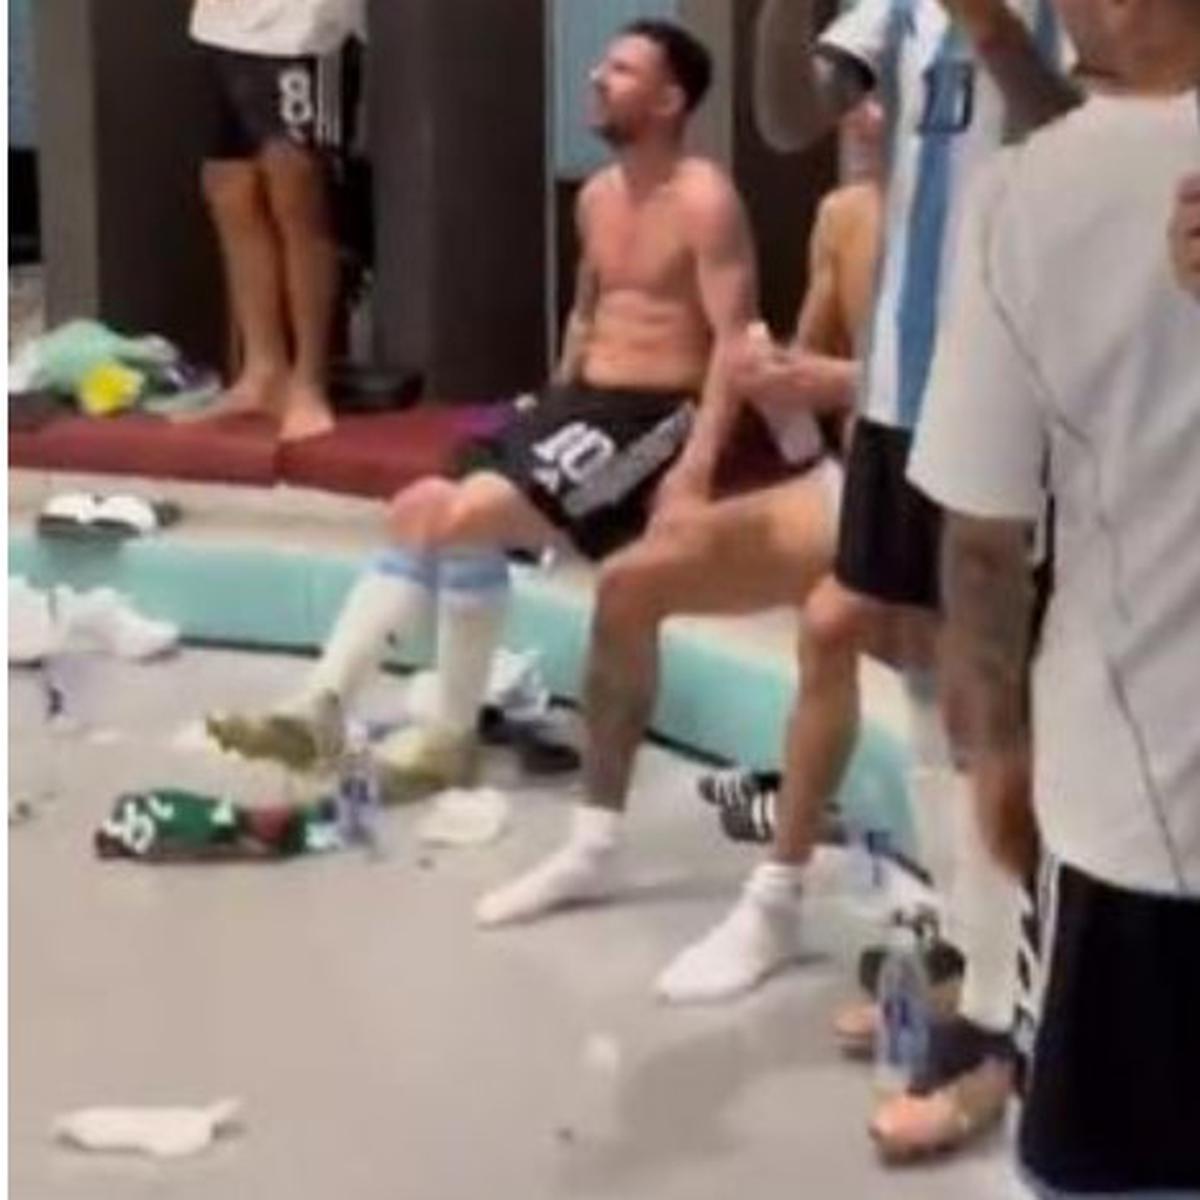 El astronómico precio de la camiseta que usó Messi en el video del